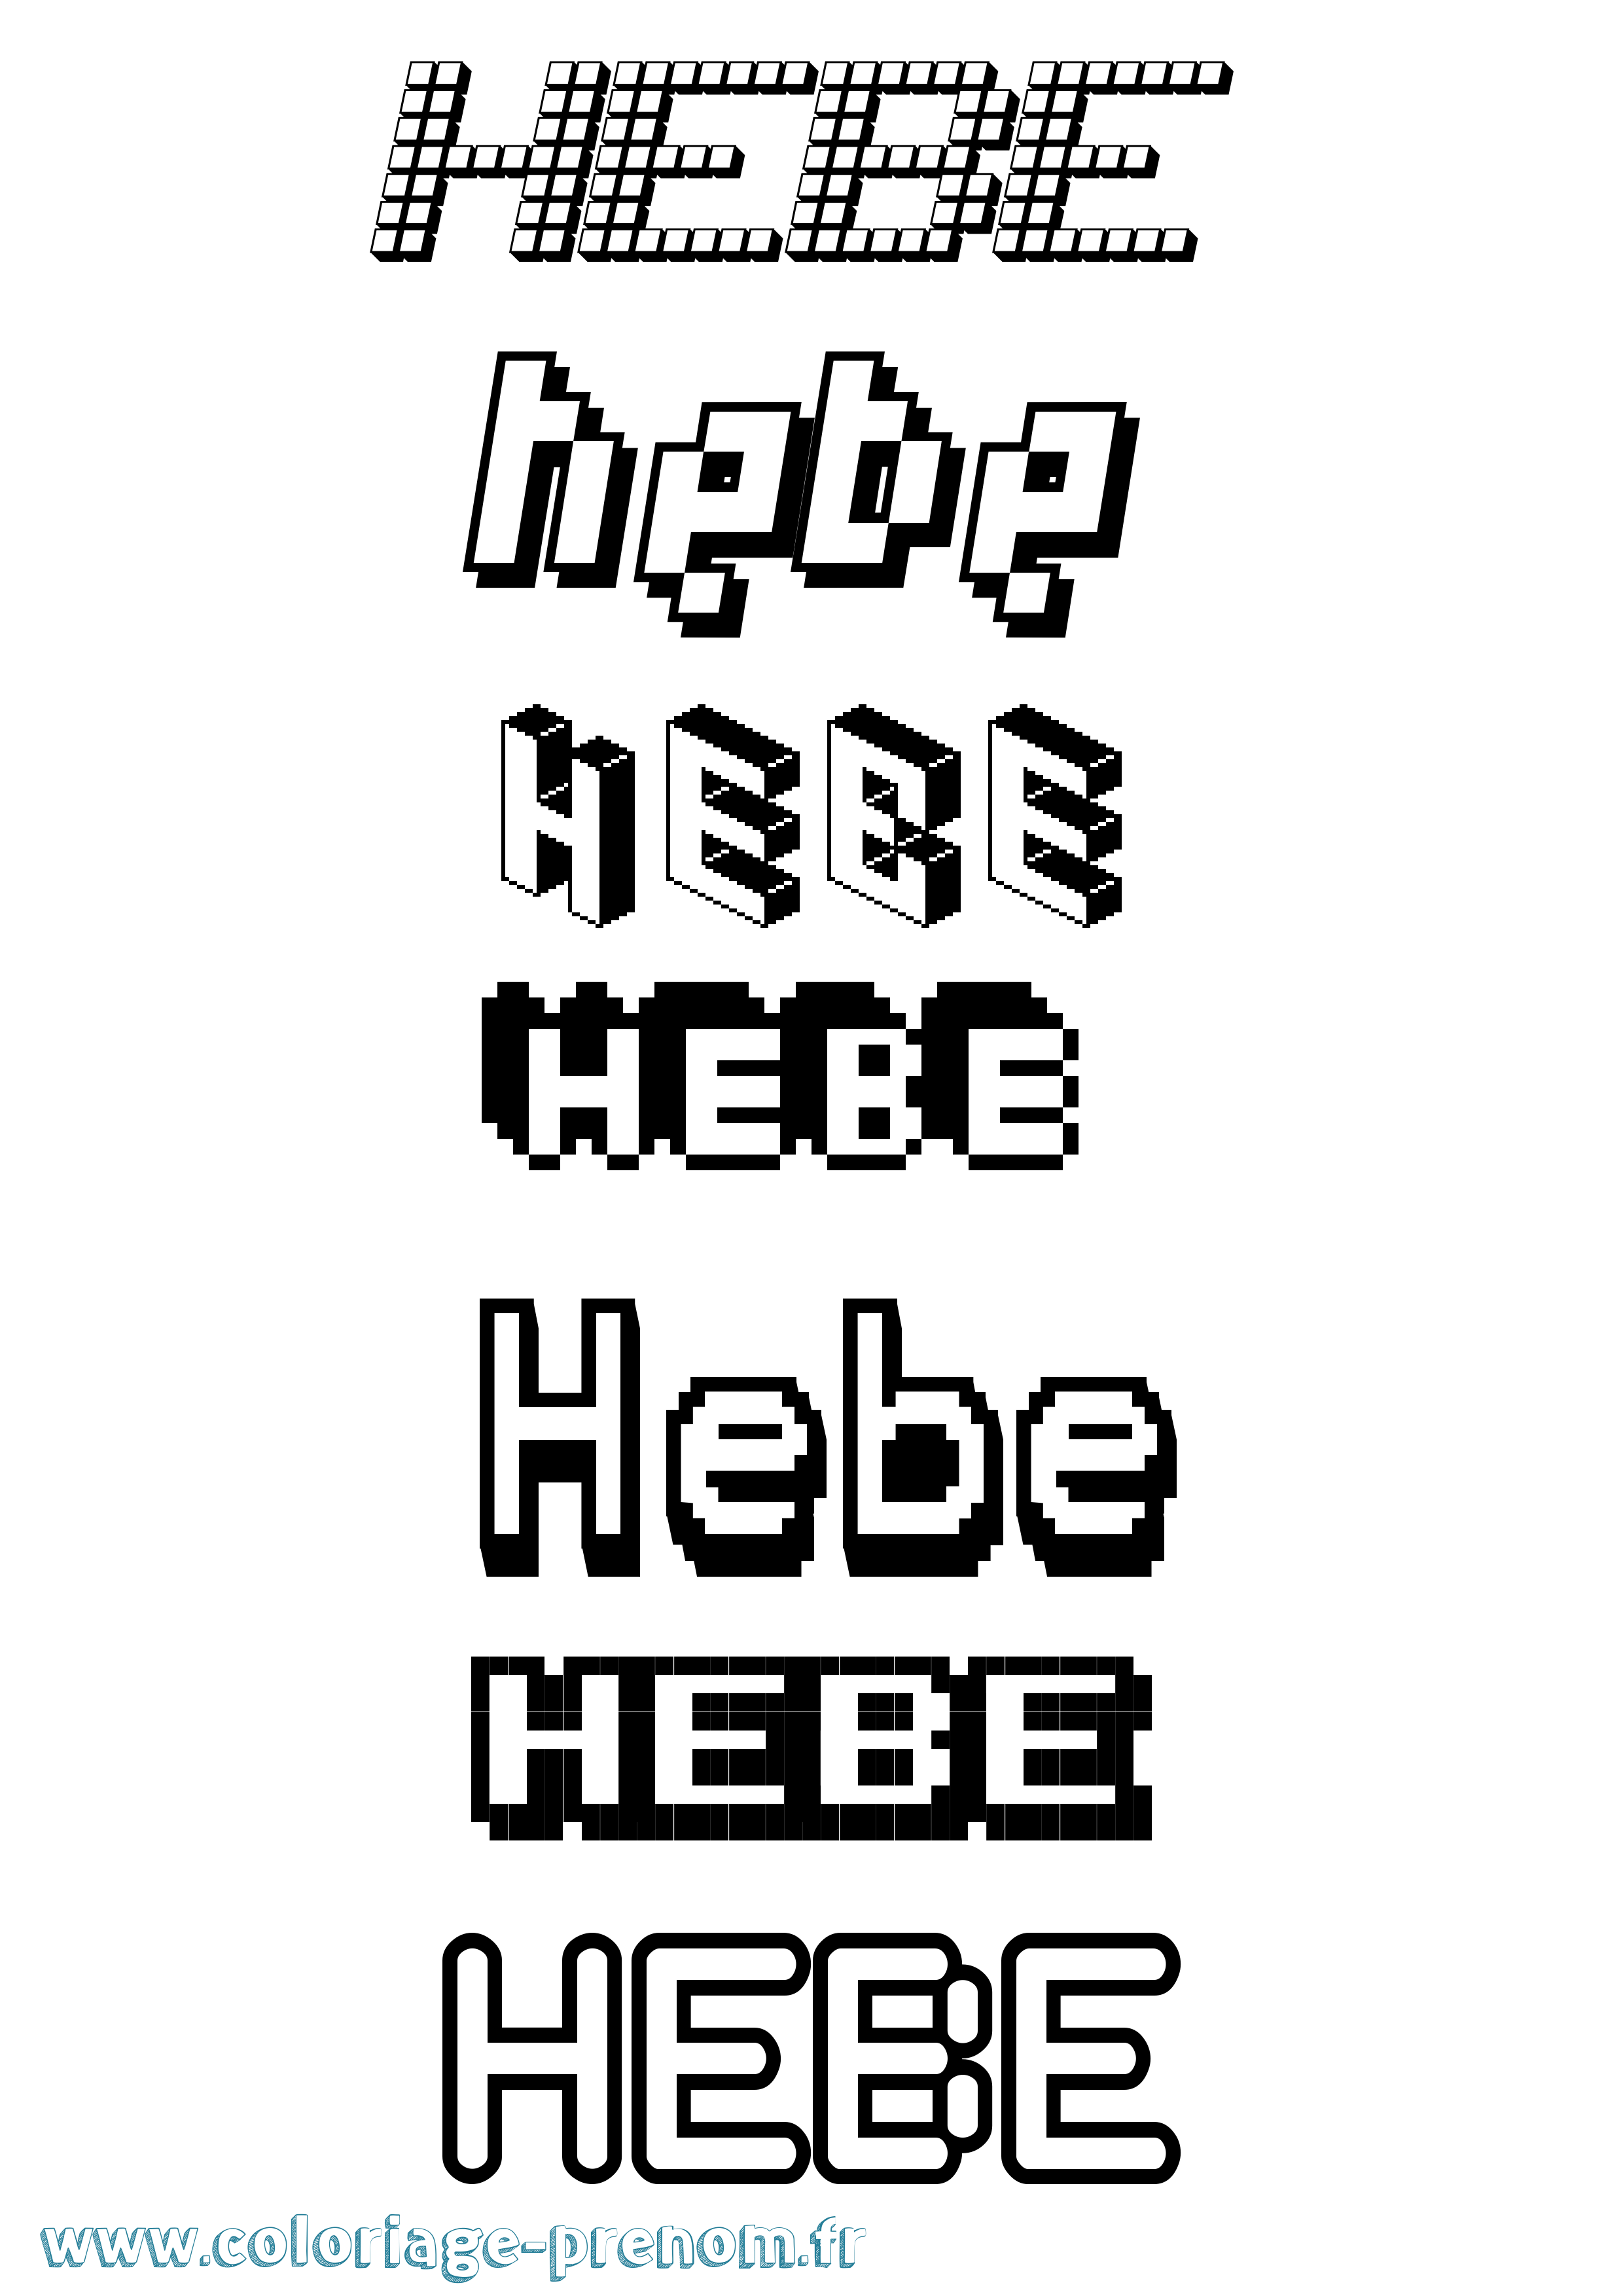 Coloriage prénom Hebe Pixel